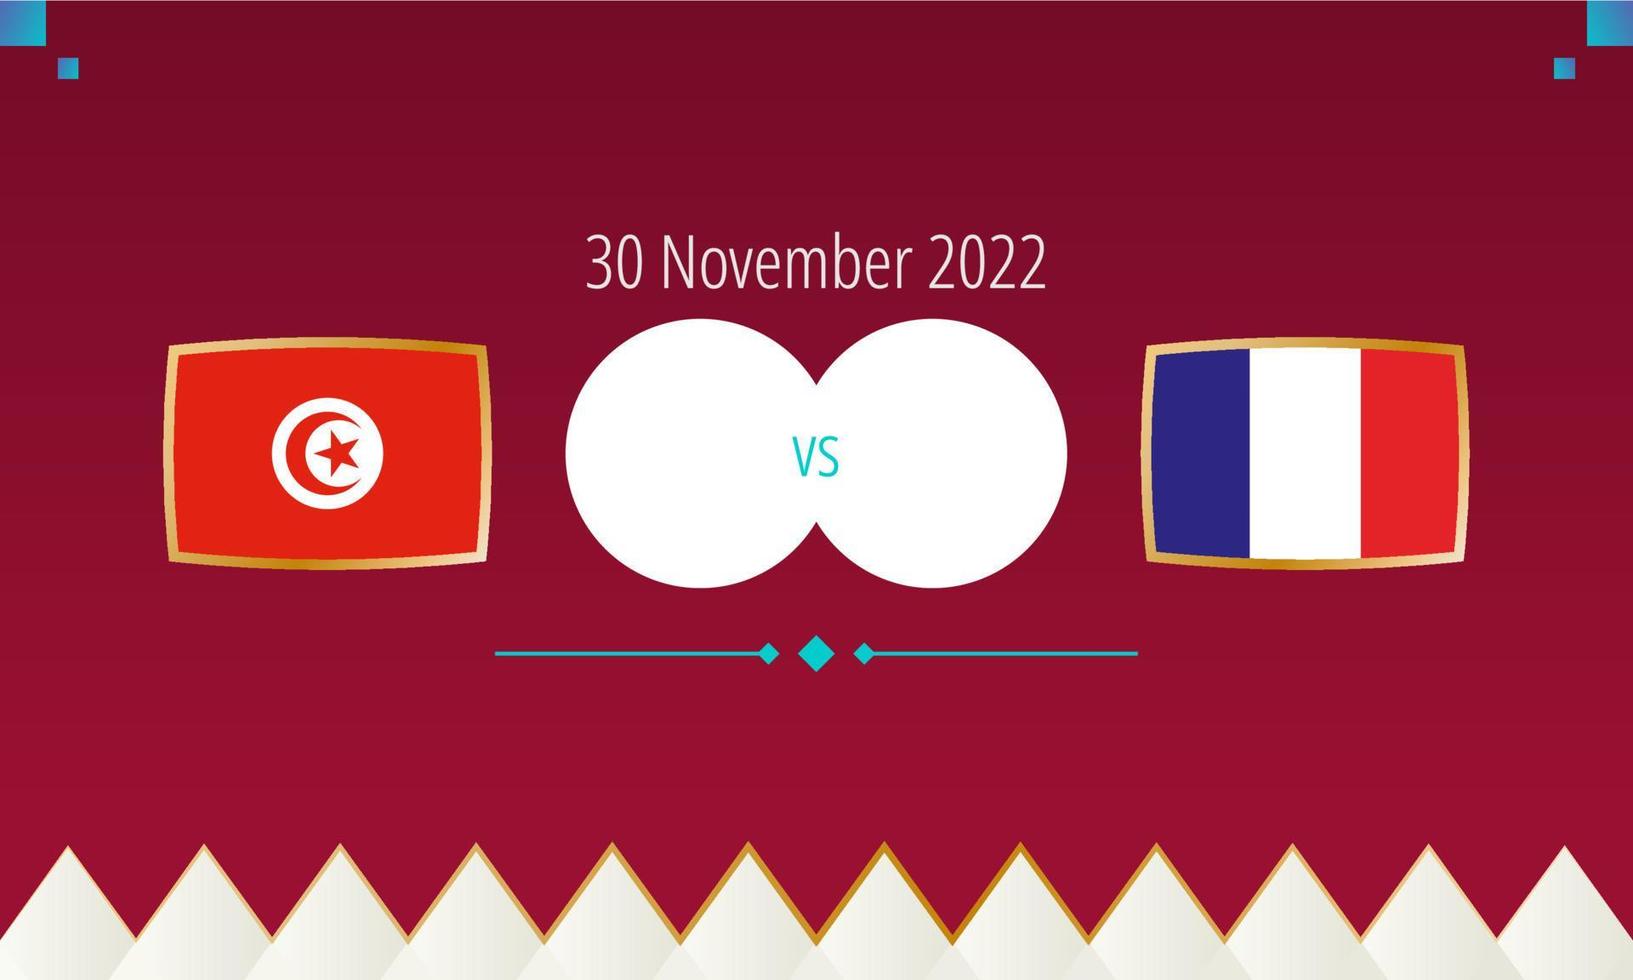 partido de fútbol túnez vs francia, competición internacional de fútbol 2022. vector